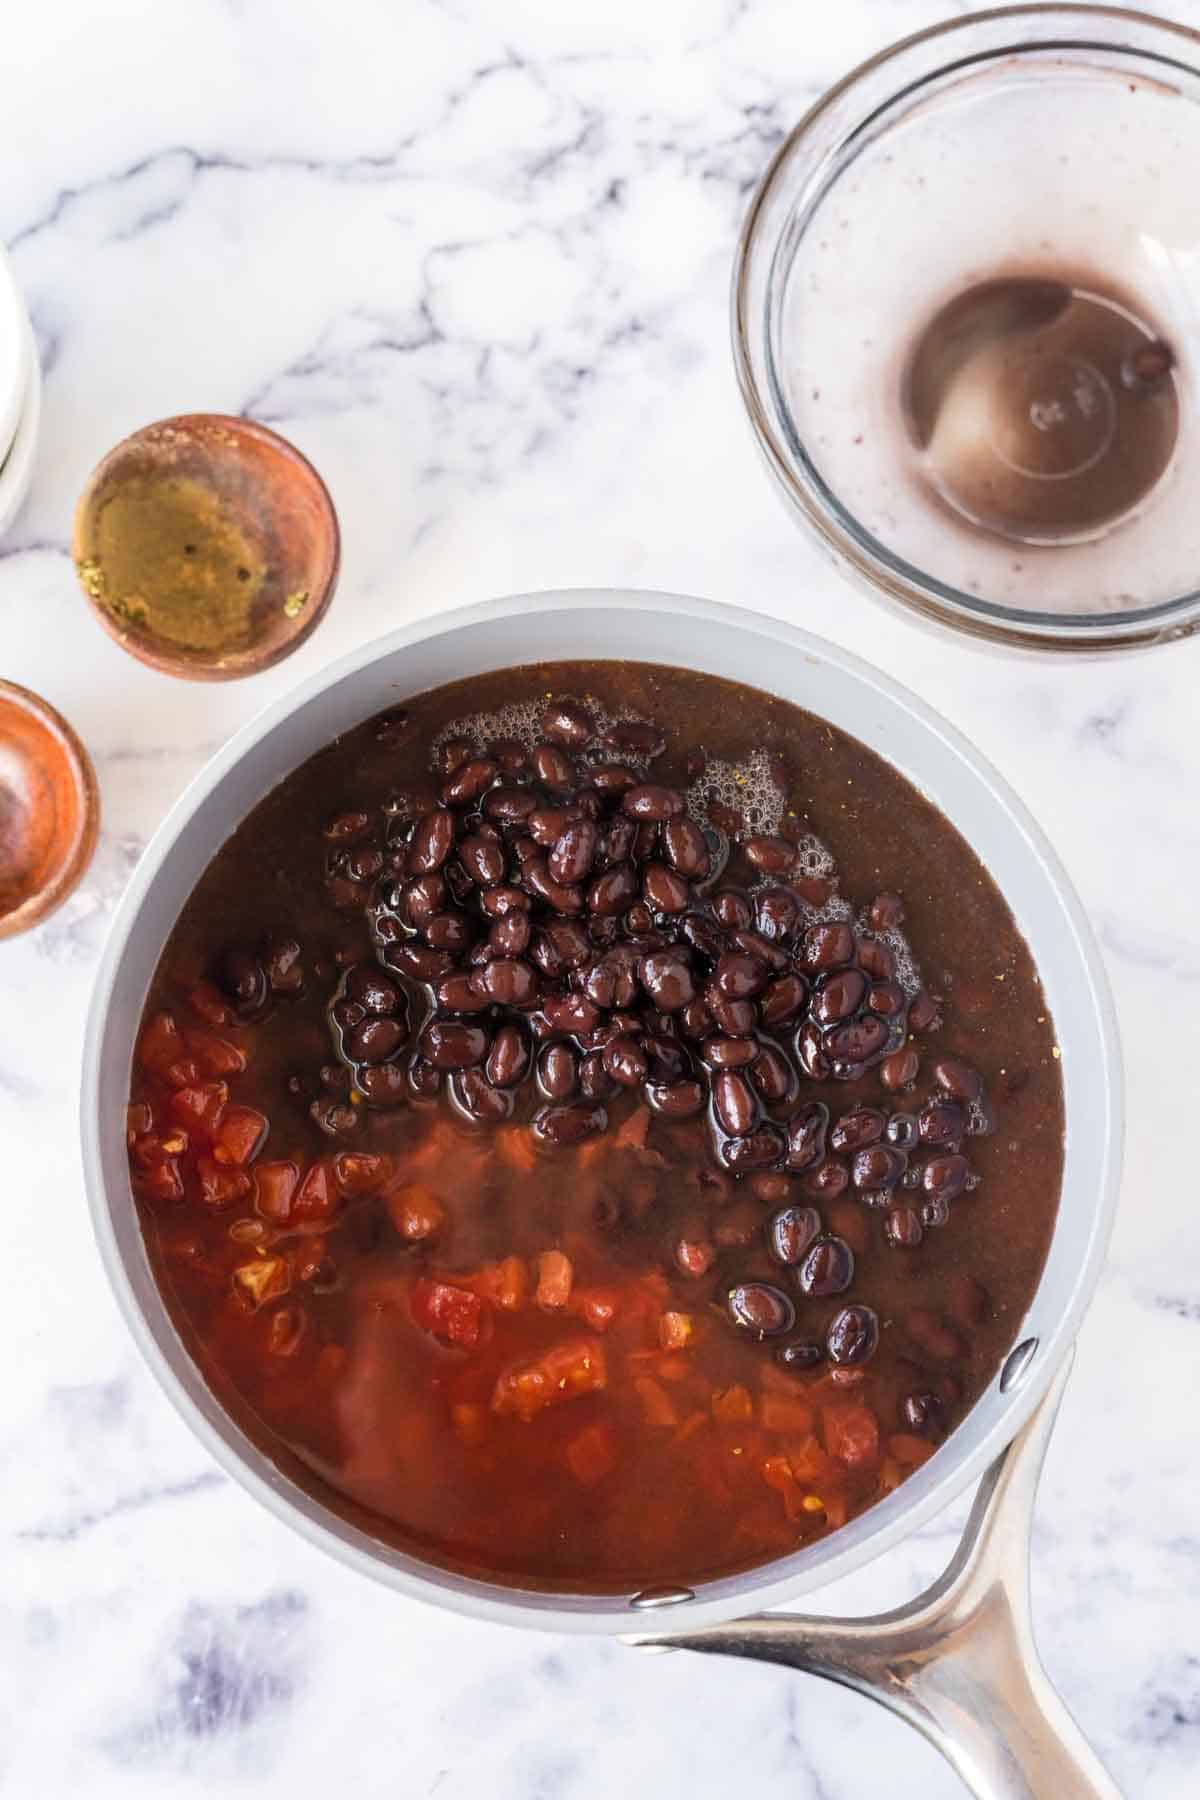 pan of ingredients for vegetarian chili